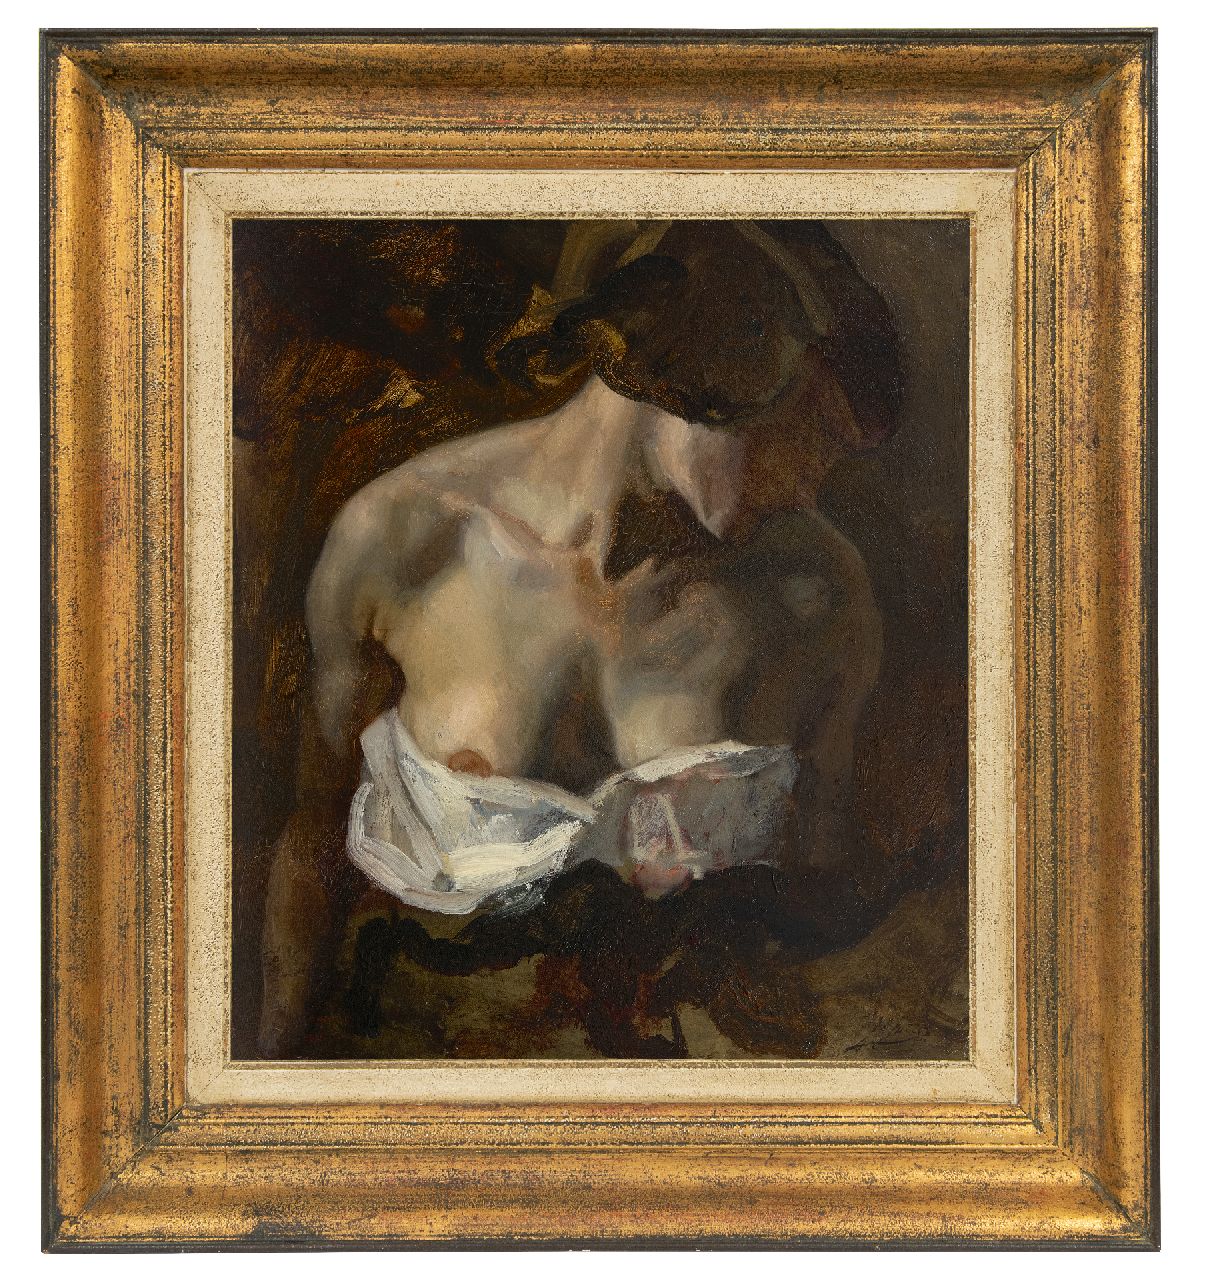 Jurres J.H.  | Johannes Hendricus Jurres, Delilah met ontblote borst (studie voor Samson en Delilah), olieverf op doek 52,3 x 45,5 cm, gesigneerd rechtsonder